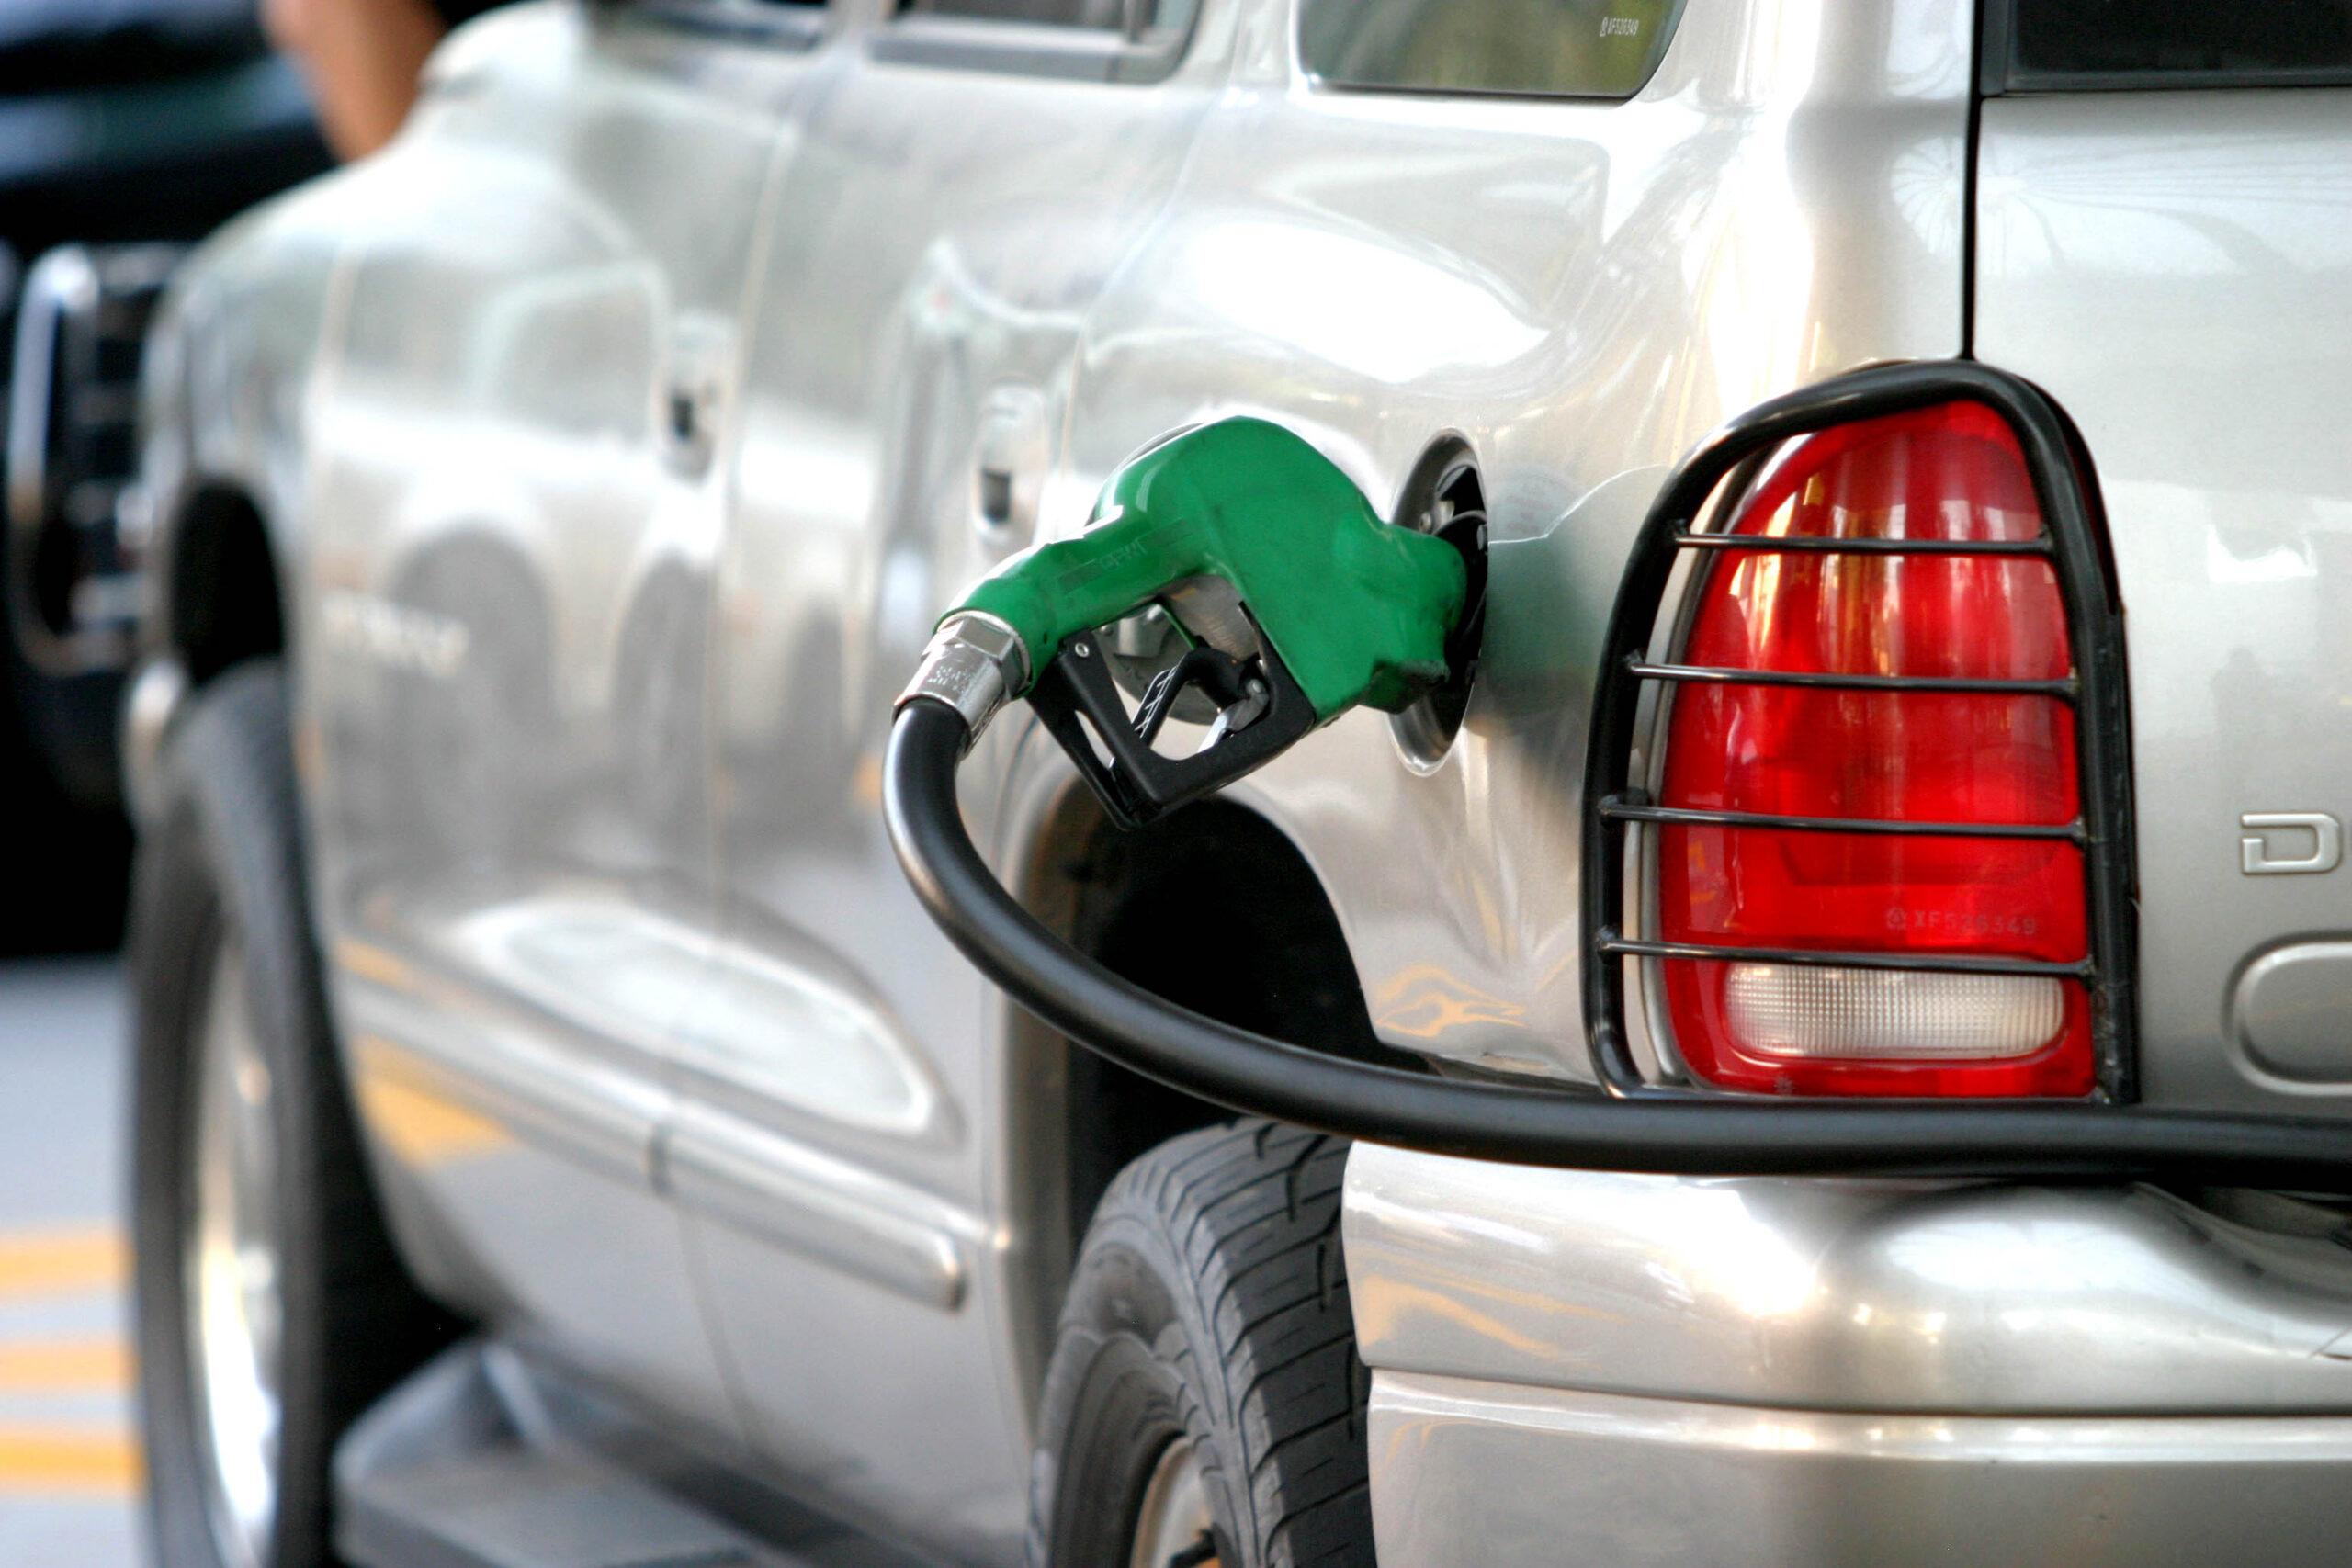 Mañana sábado, el séptimo aumento en precio de gasolinas